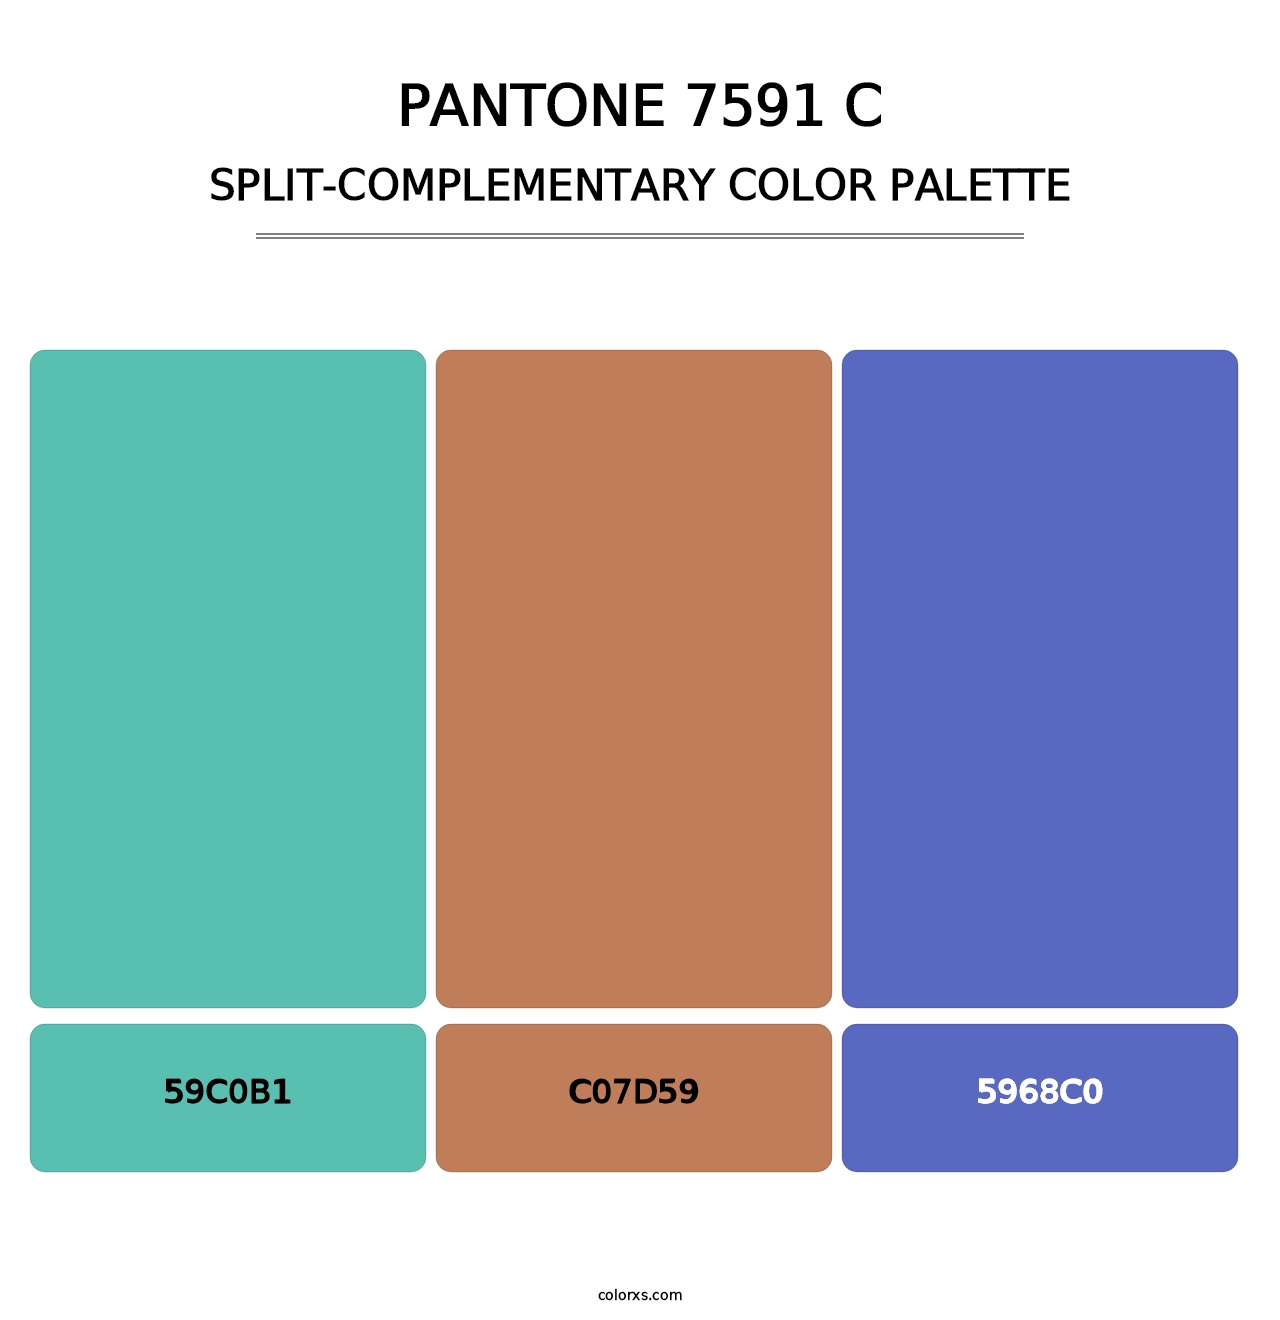 PANTONE 7591 C - Split-Complementary Color Palette